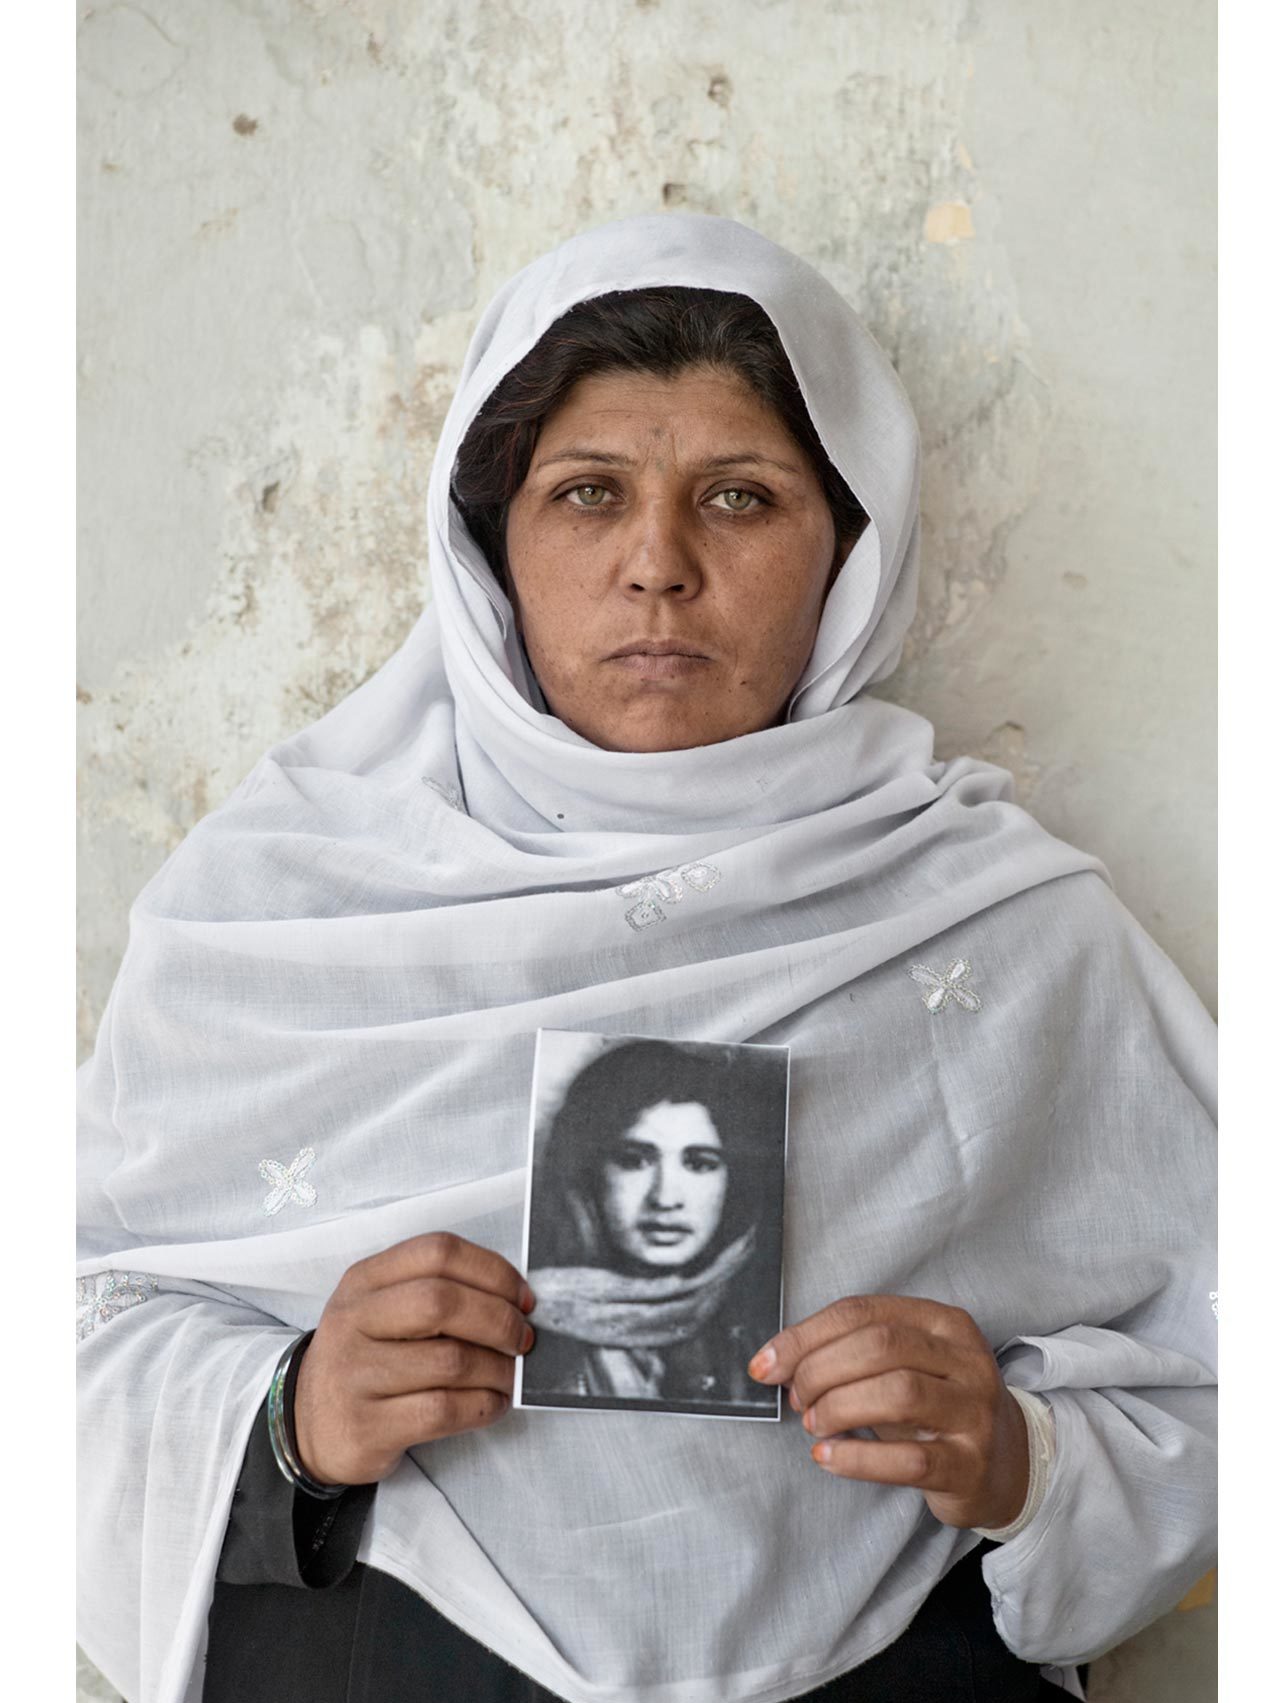 Nazanin posa con el retrato de una familiar desaparecida en la guerra.